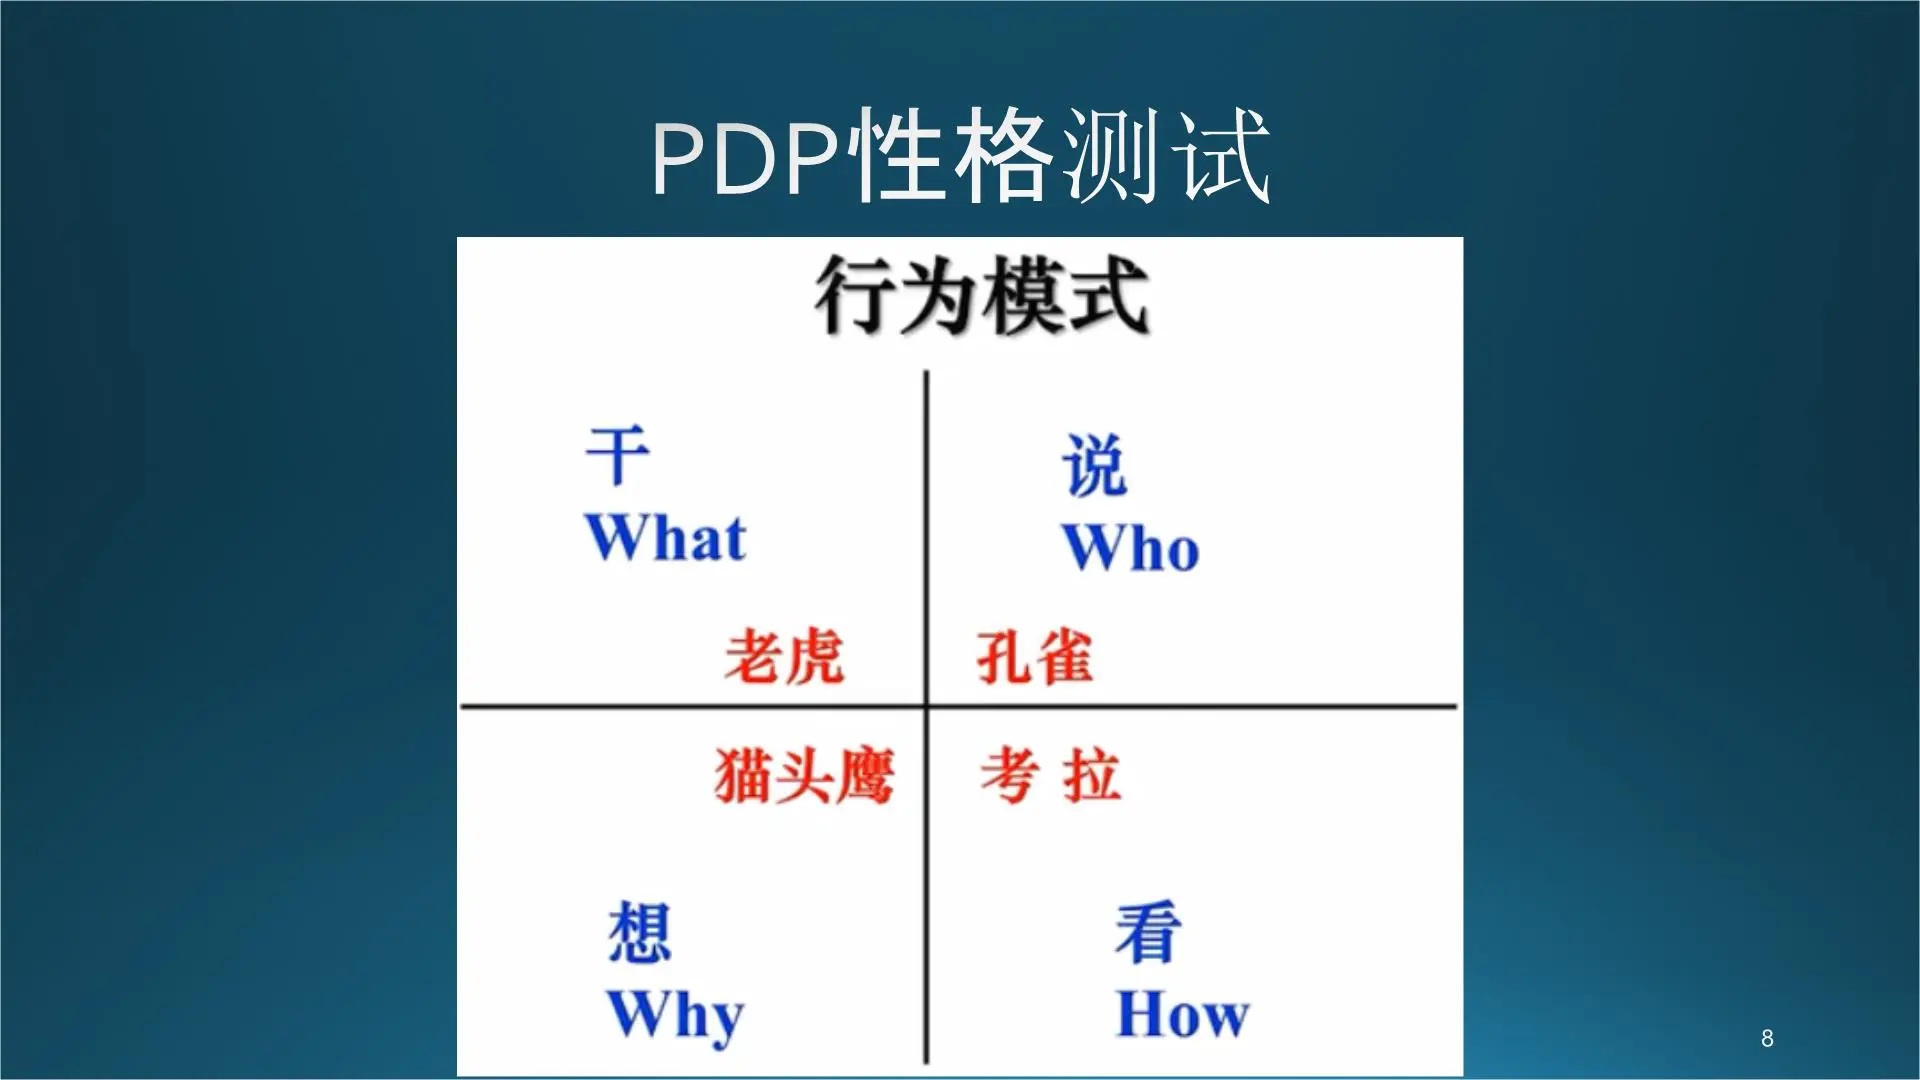 PDP性格测试培训课件插图8